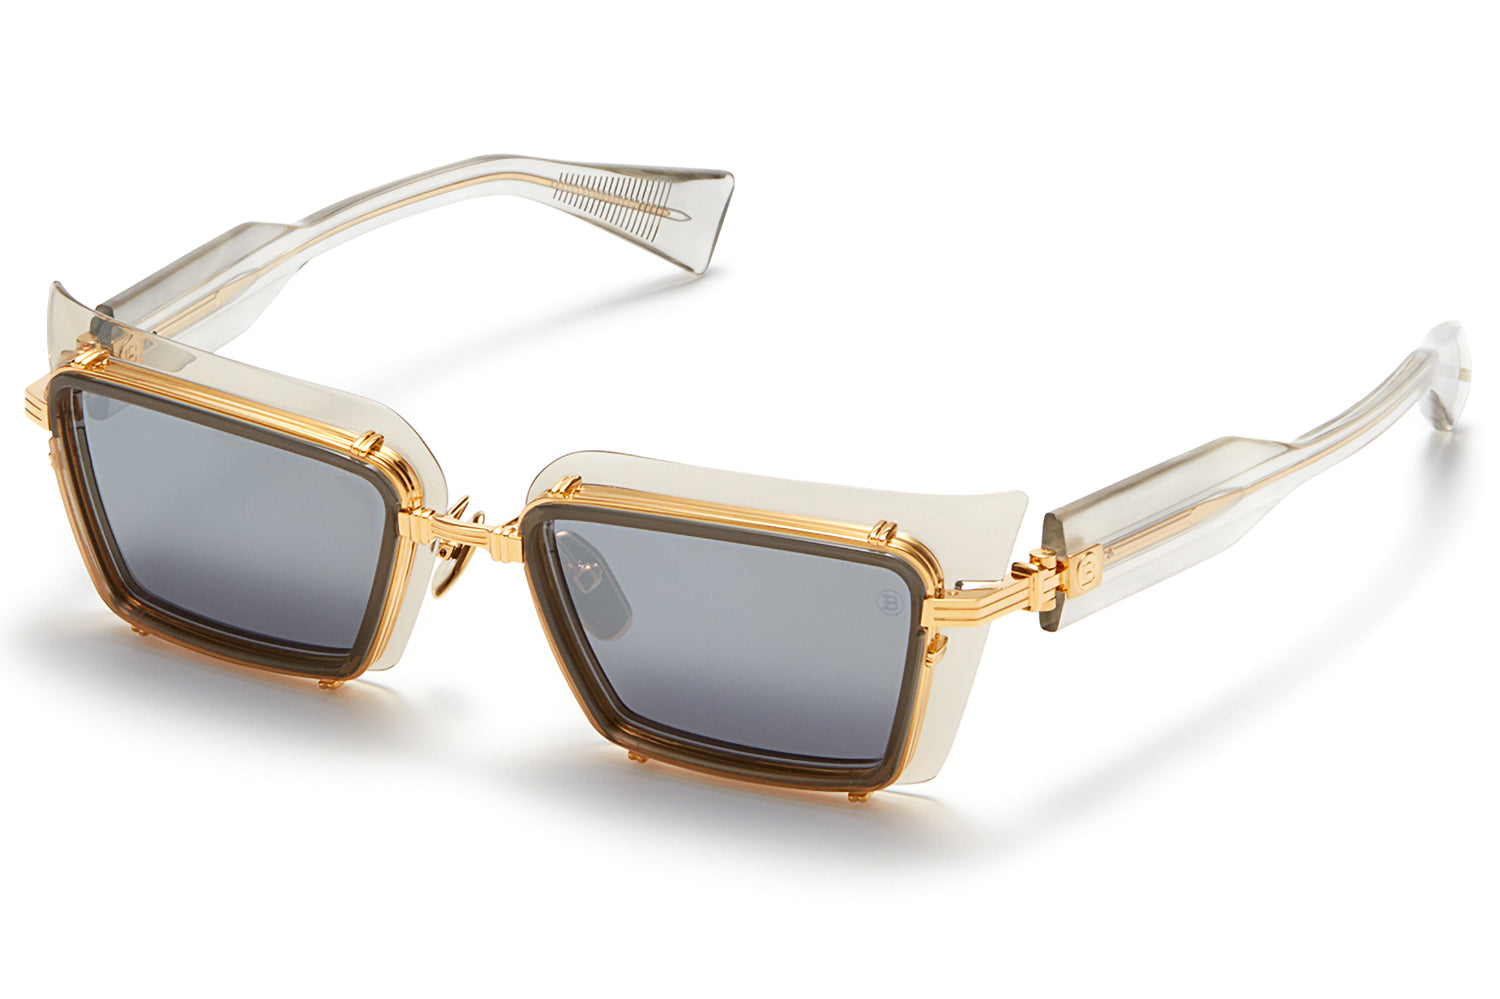 Louis Vuitton Mix It Up Round Sunglasses Black Acetate. Size U